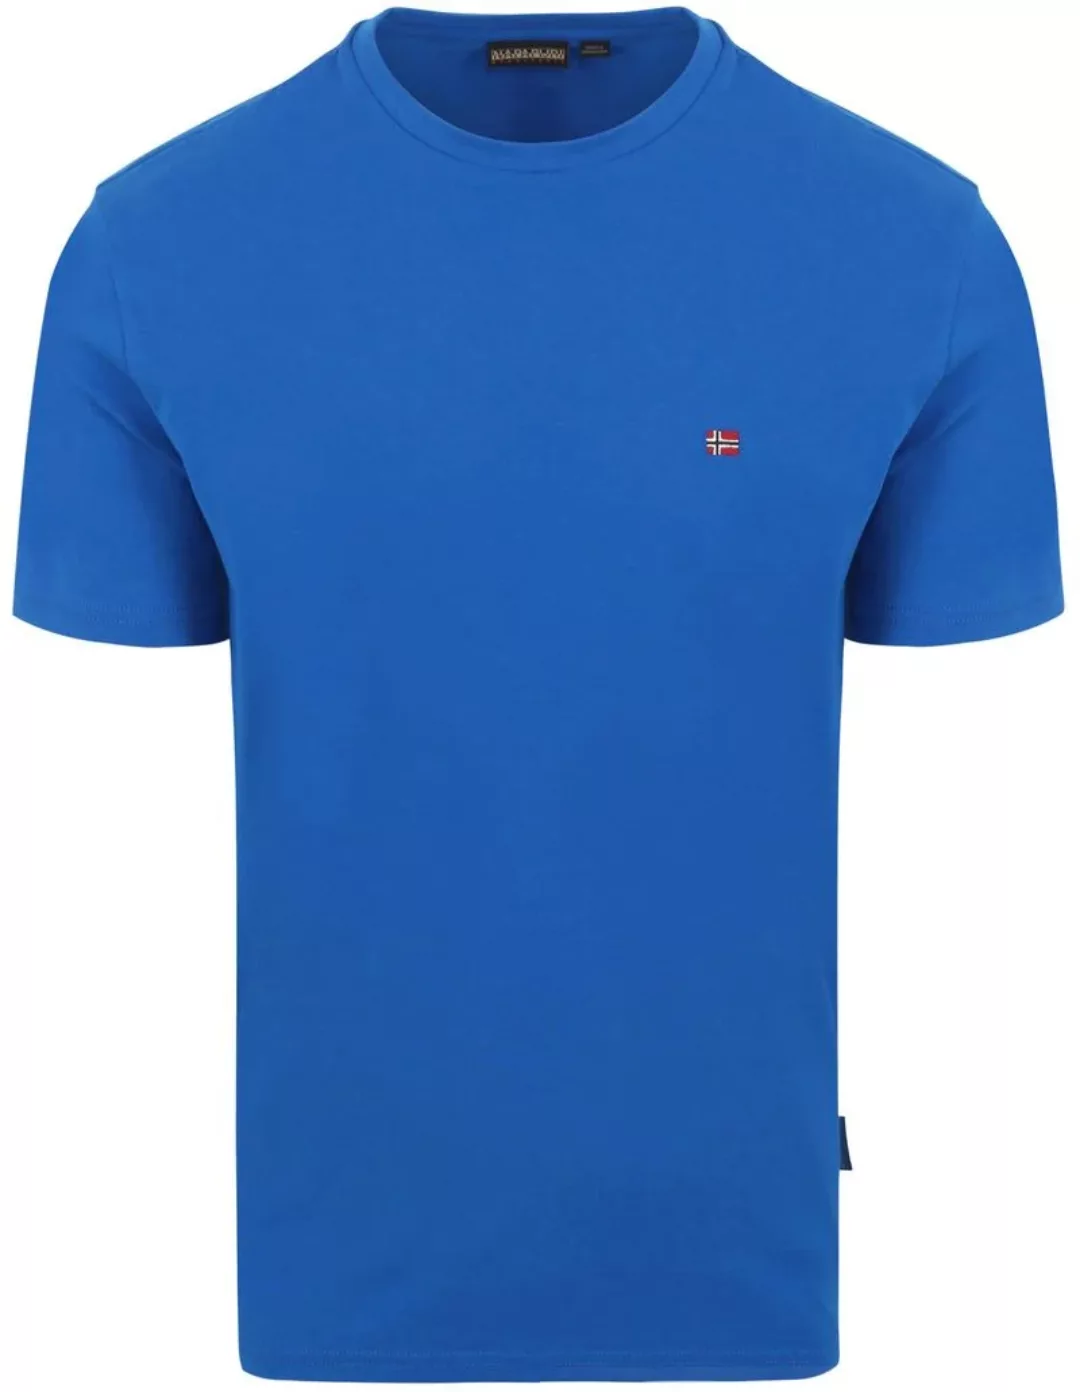 Napapijri Salis T-shirt Kobaltblau - Größe XXL günstig online kaufen